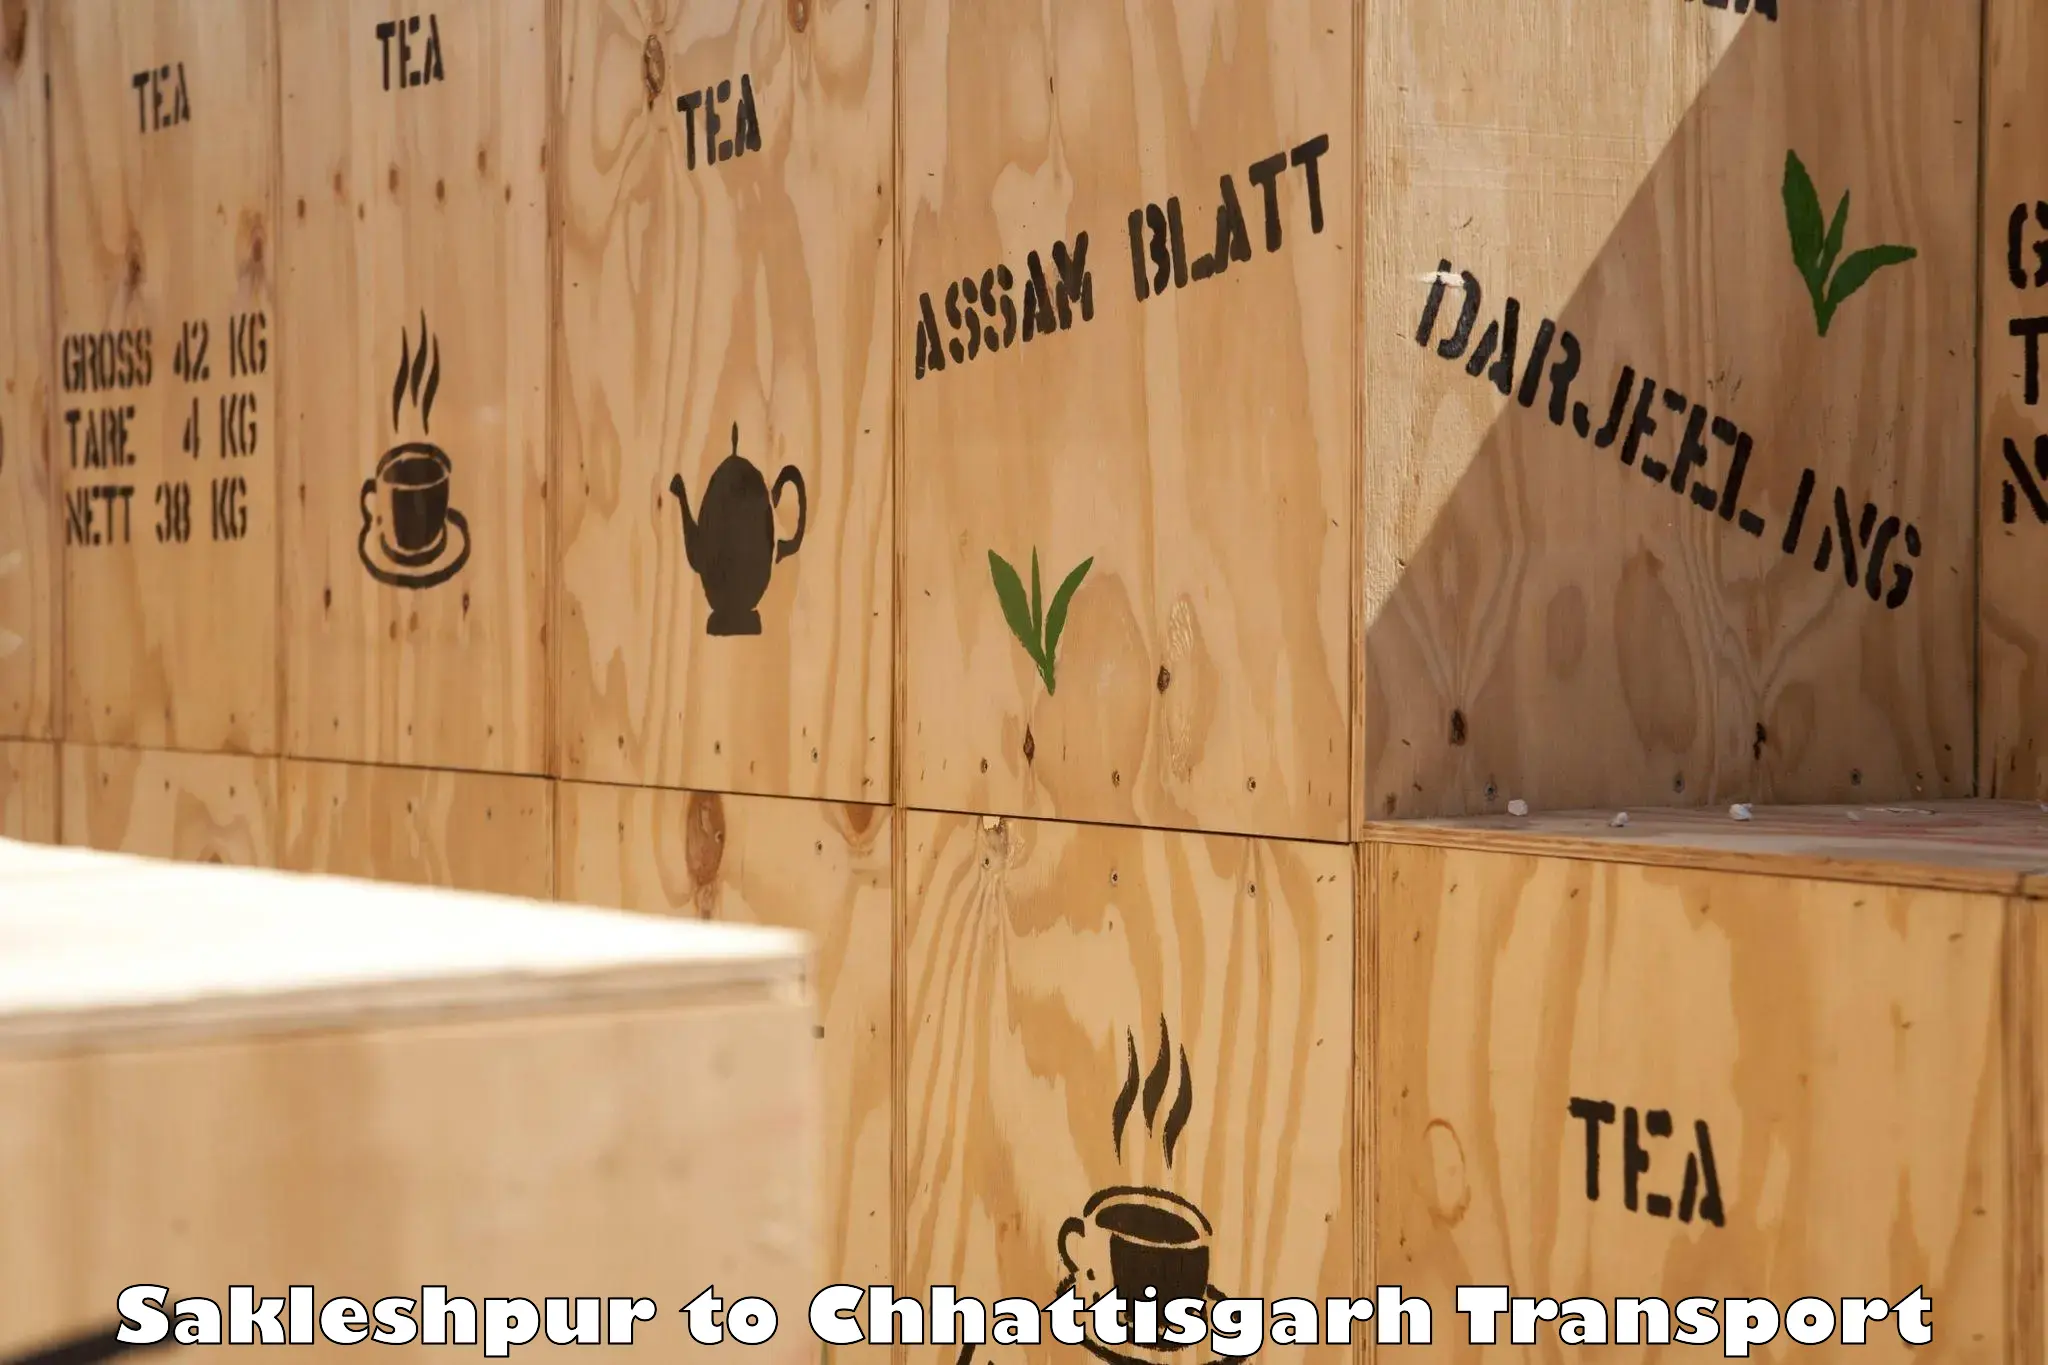 Commercial transport service Sakleshpur to Chhattisgarh